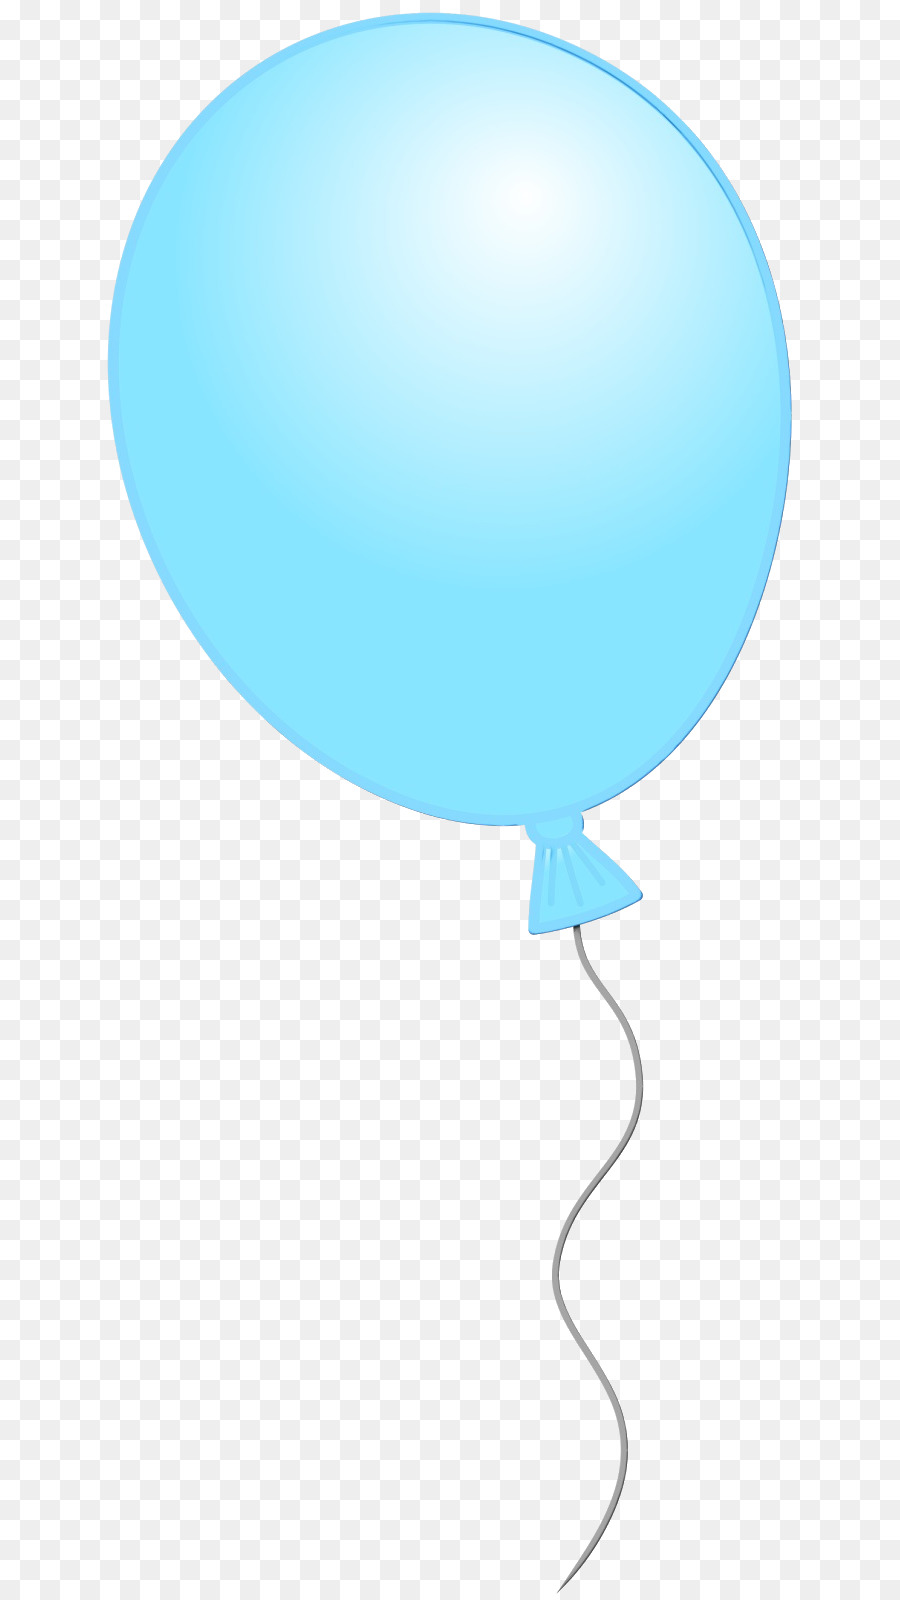 ClipArt Produktdesign Ballonlinie - 